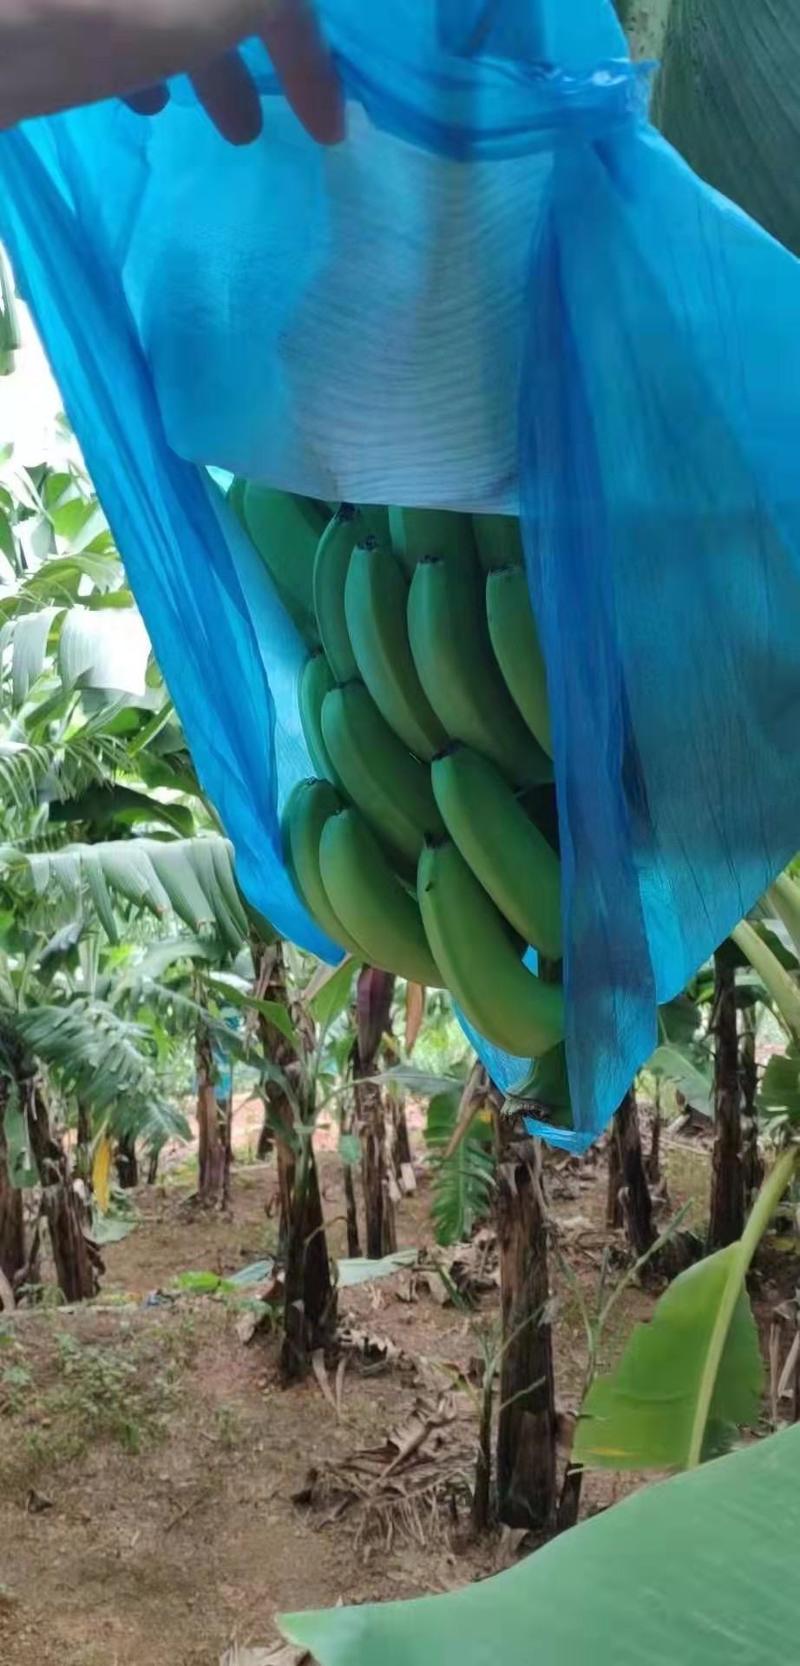 香蕉云南红河绿皮香蕉产地直销一手货源对接全国发货